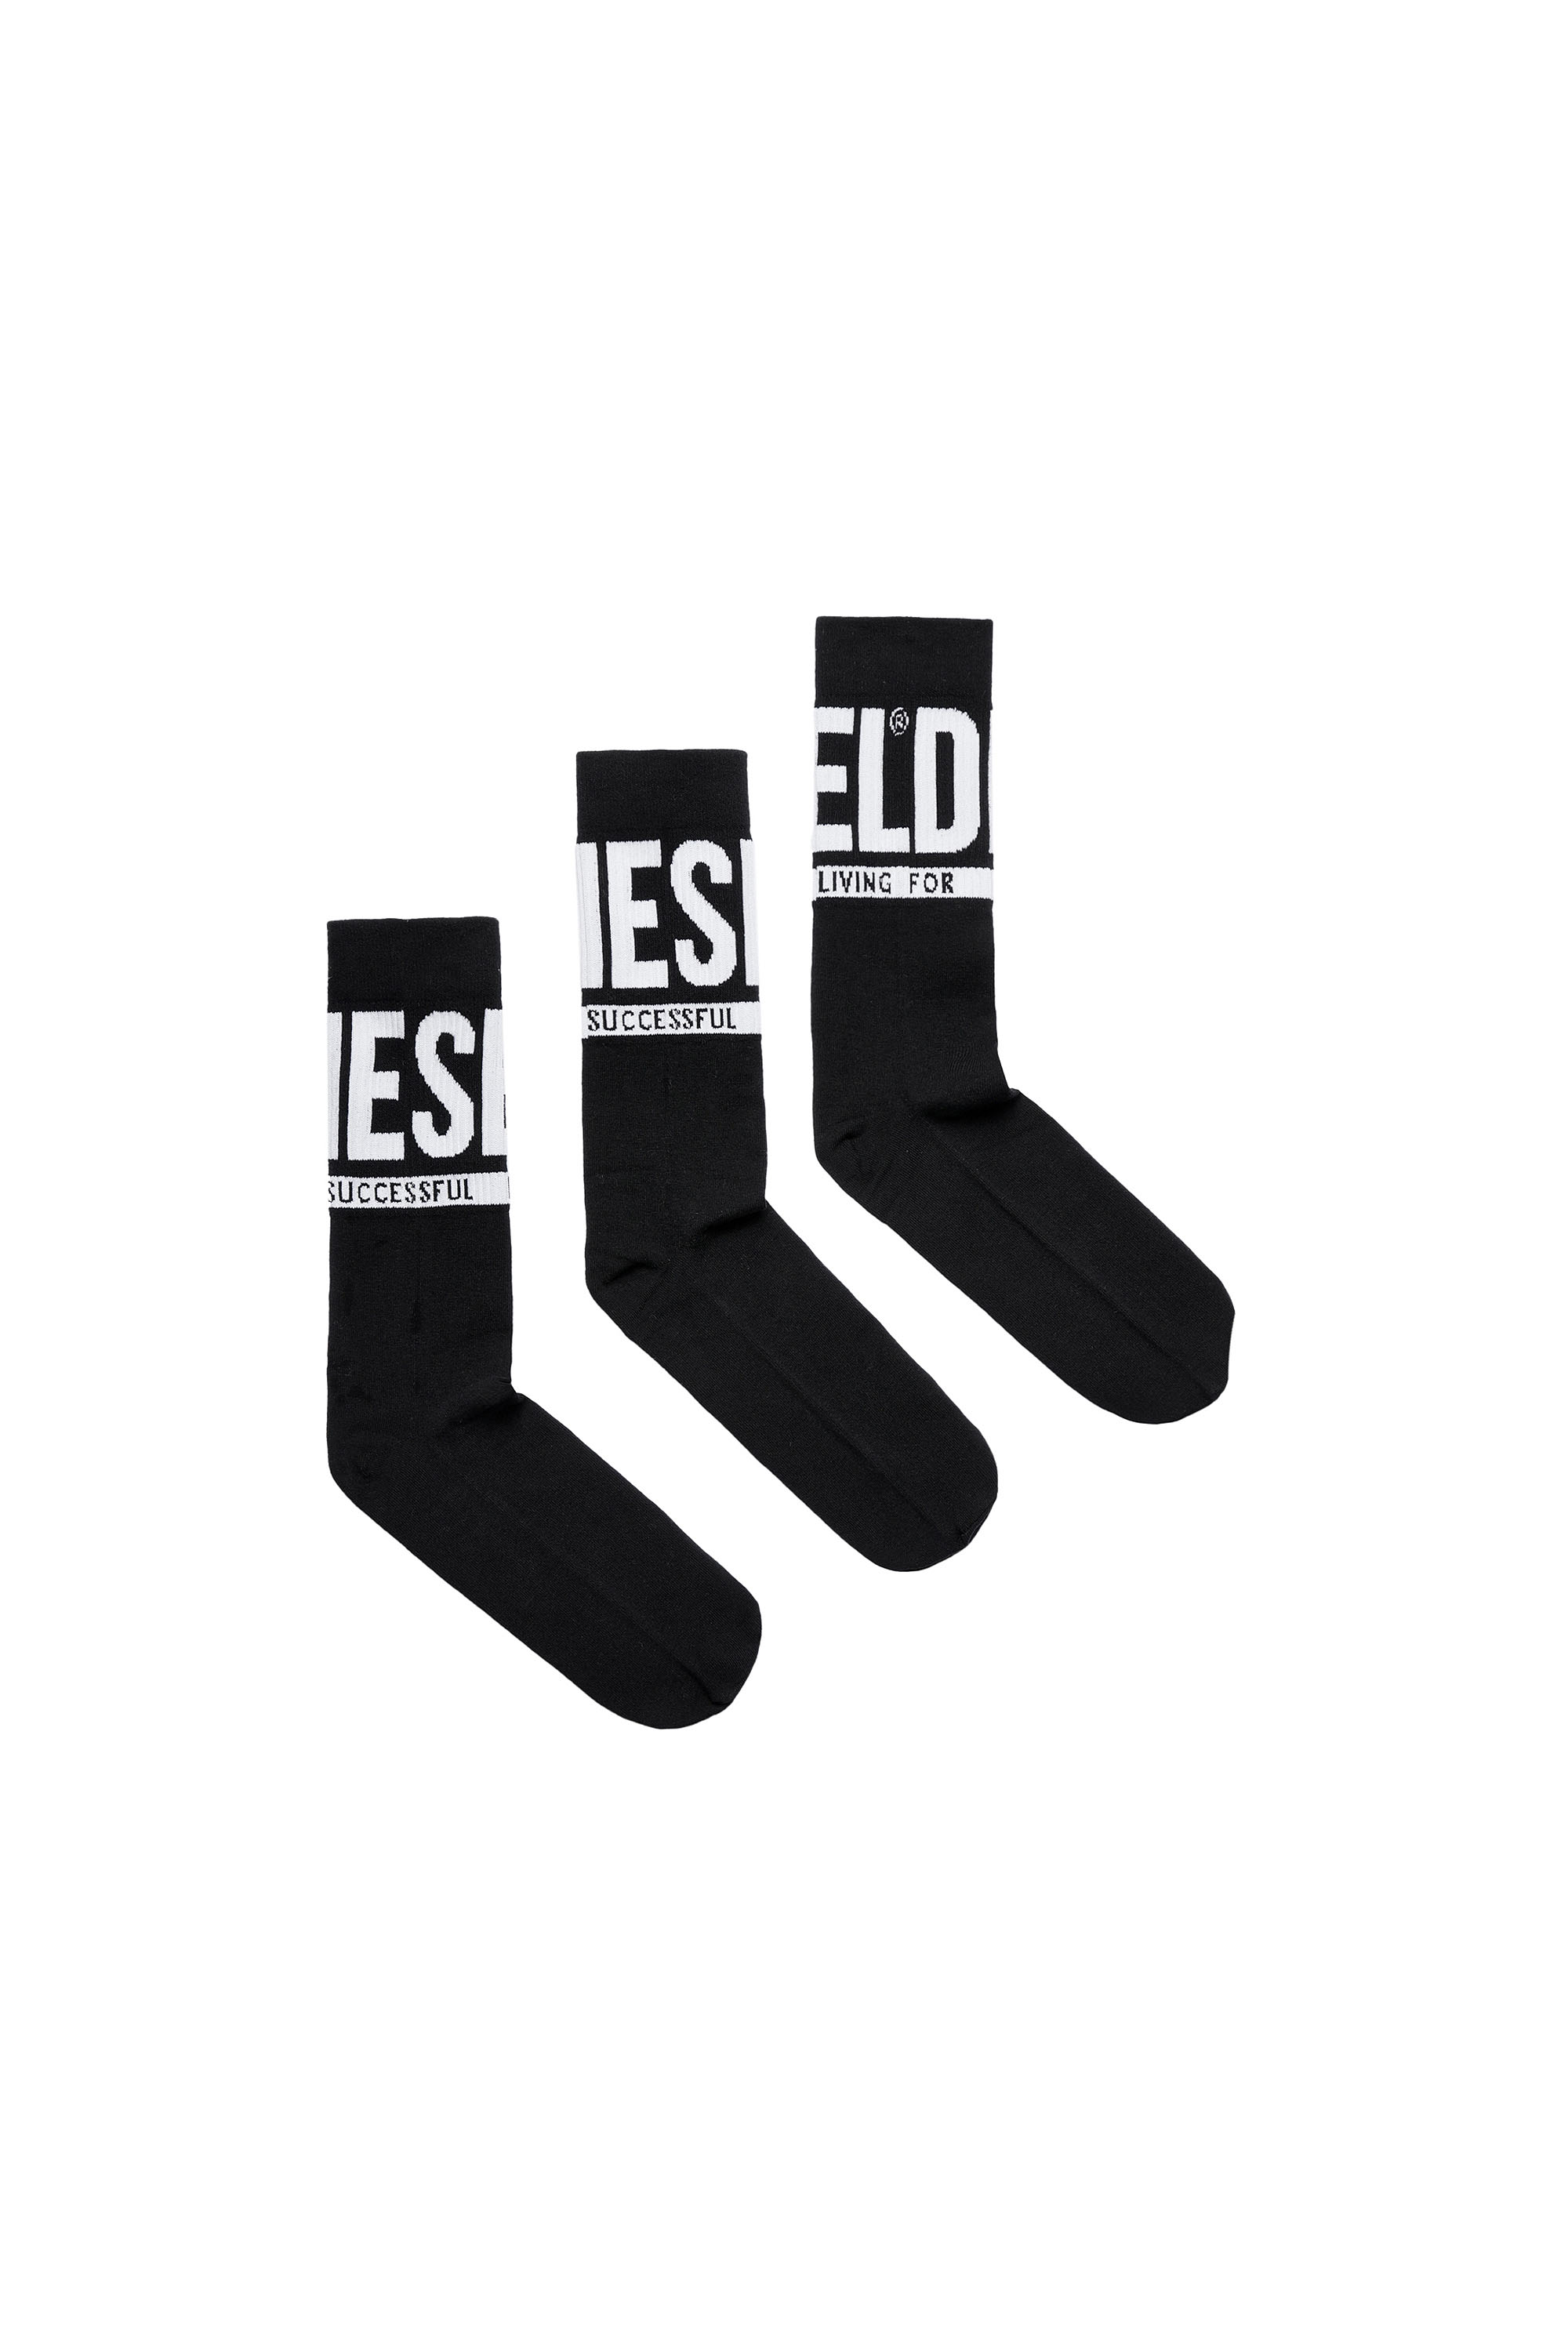 Diesel - Set de 3 pares de calcetines con logo Diesel - Calcetines - Hombre - Negro